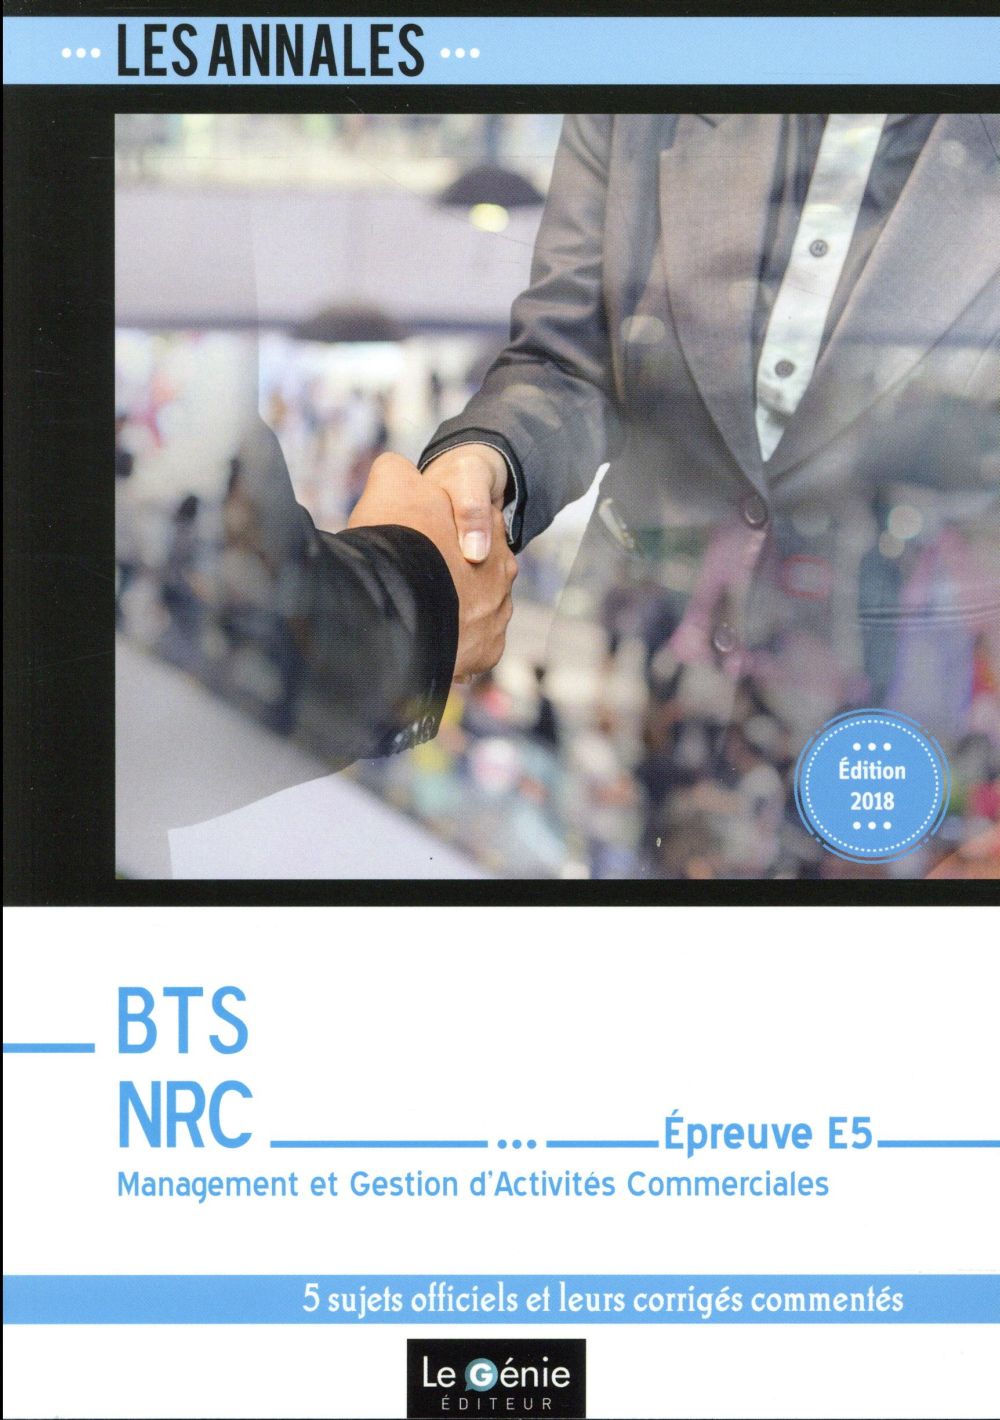 BTS NRC - EPREUVE E5 - MANAGEMENT ET GESTION D'ACTIVITES COMMERCIALES